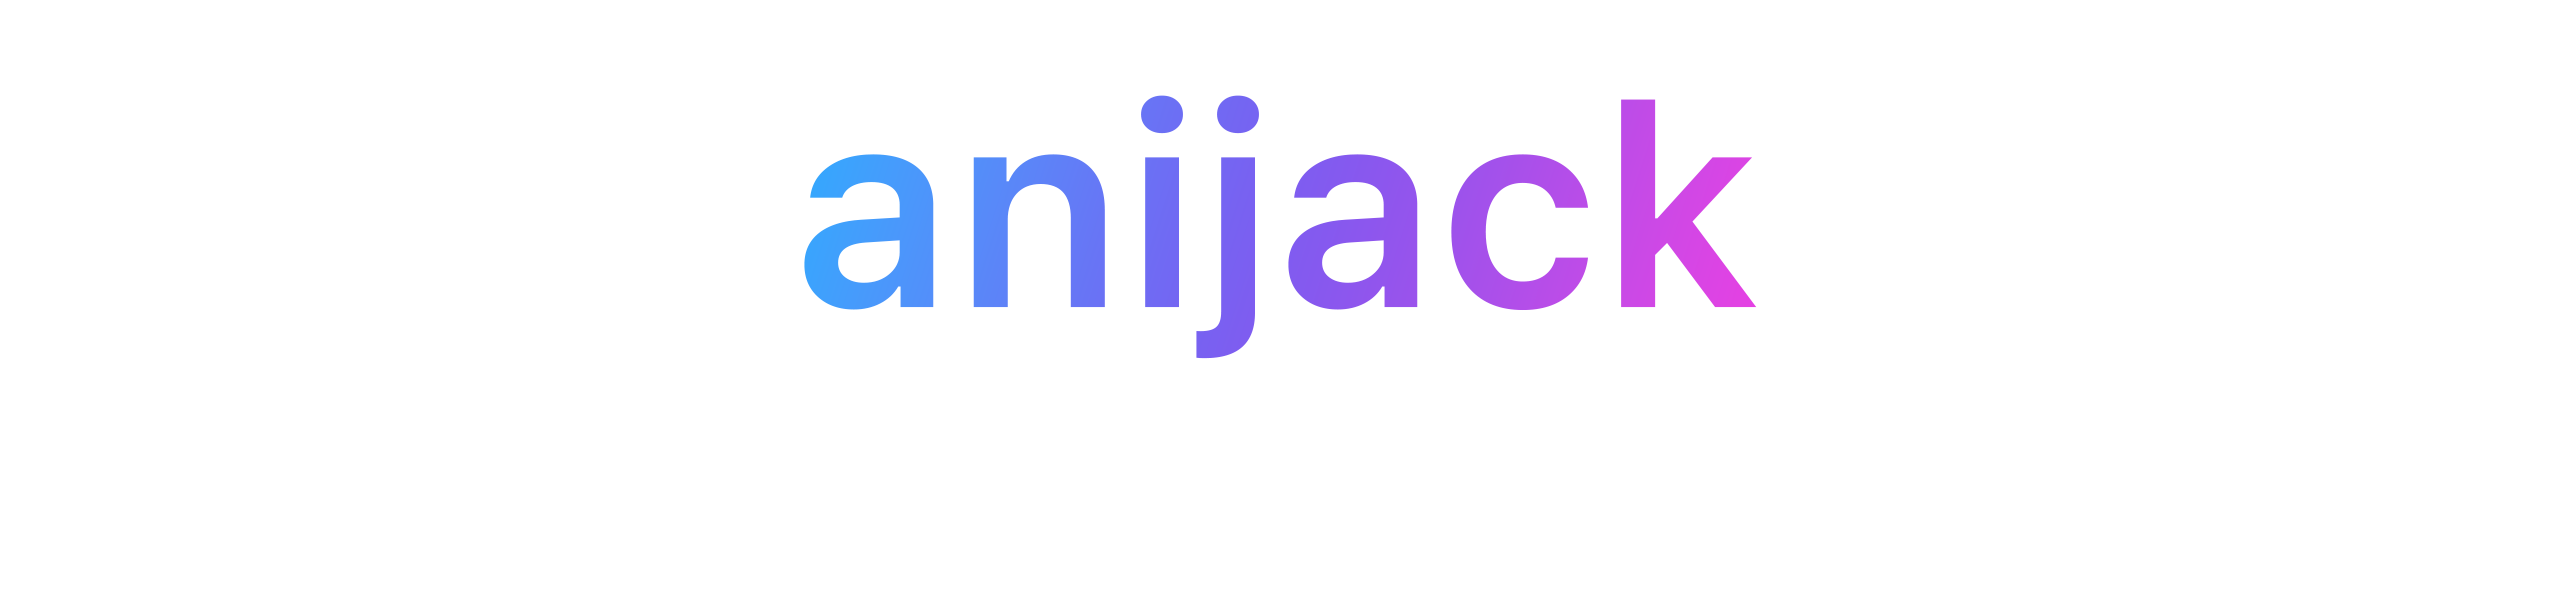 anijack